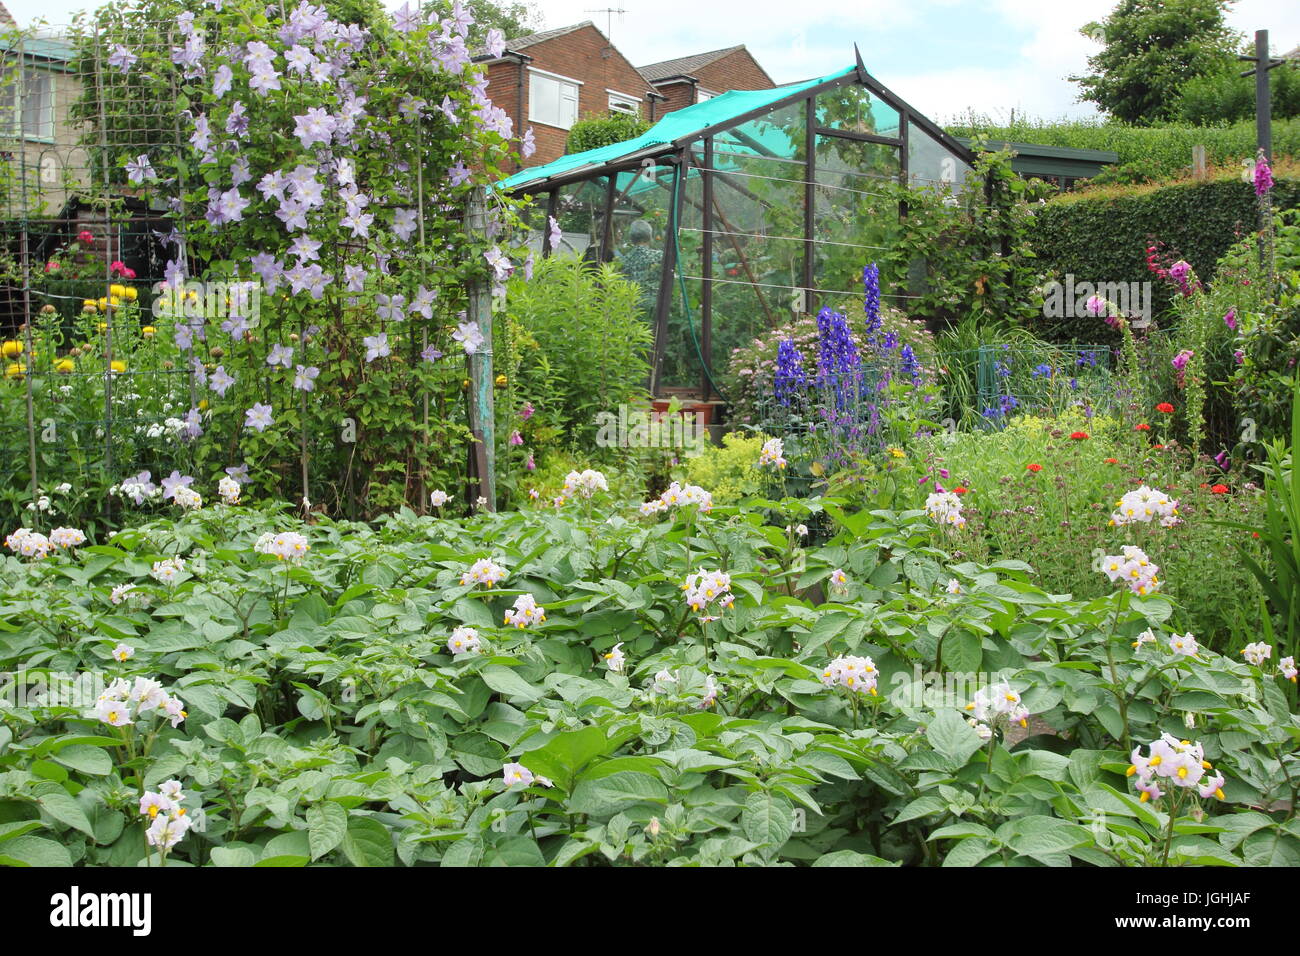 Un jardin doté d'allotissement de légumes (pommes de terre desiree en premier plan) et de fleurs (clematis, digitales, delphiniums), - juin, Sheffield UK Banque D'Images